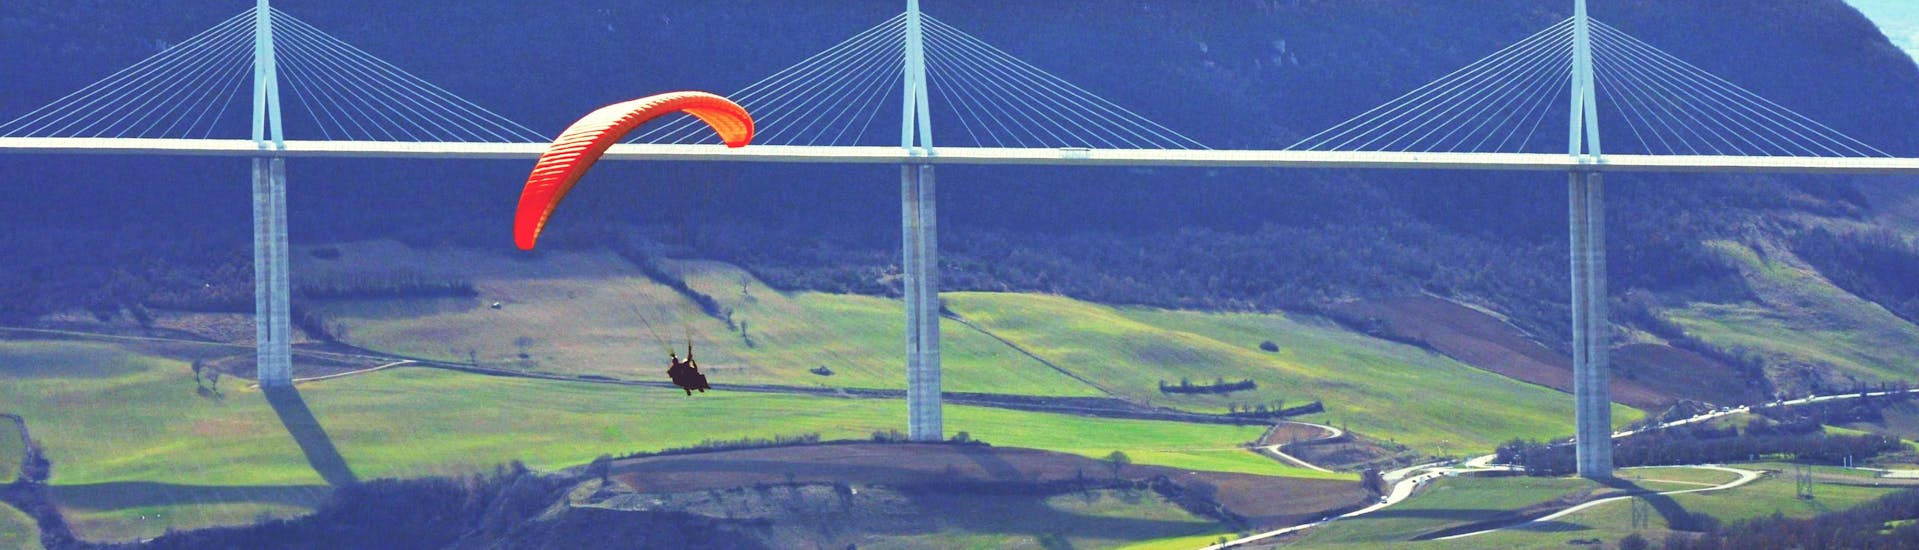 Un pilote de parapente d'Air Magic Parapente effectue un vol en tandem en parapente "Découverte Enfants" devant le viaduc de Millau.